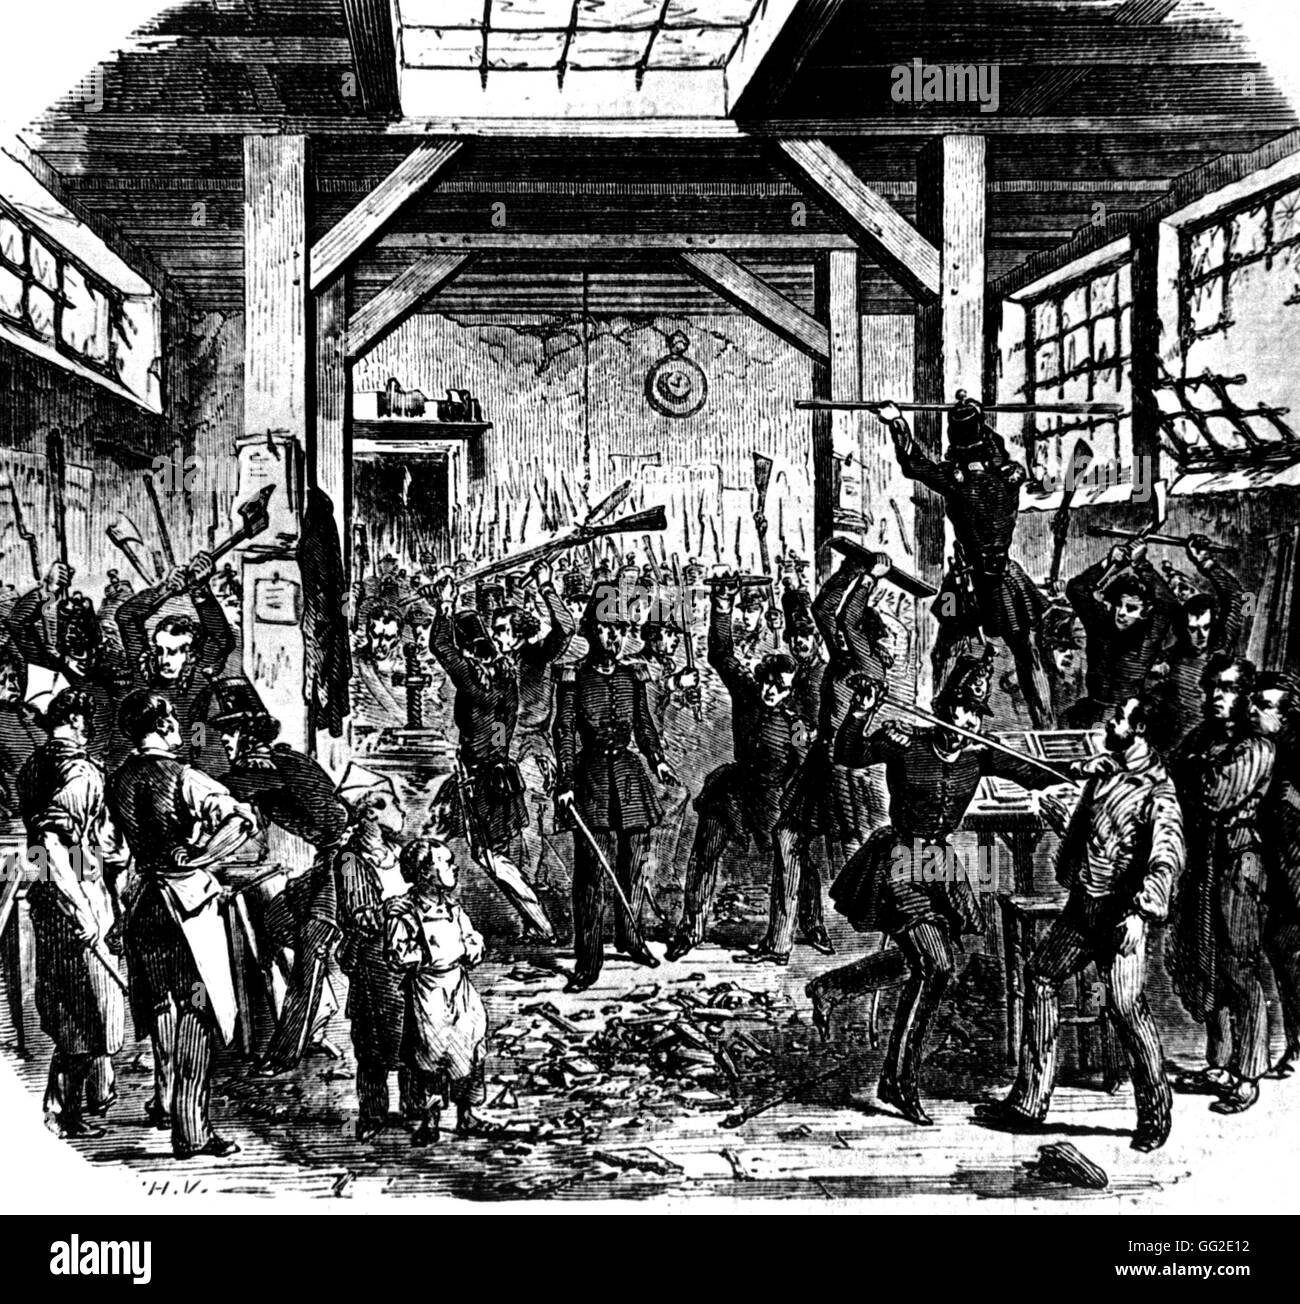 Giugno 13, 1849: uomini dalla Guardia Nazionale di entrare nel Boute lavori di stampa che consente la stampa di quotidiani democratici 1849 Francia Parigi. Museo Carnavalet Foto Stock